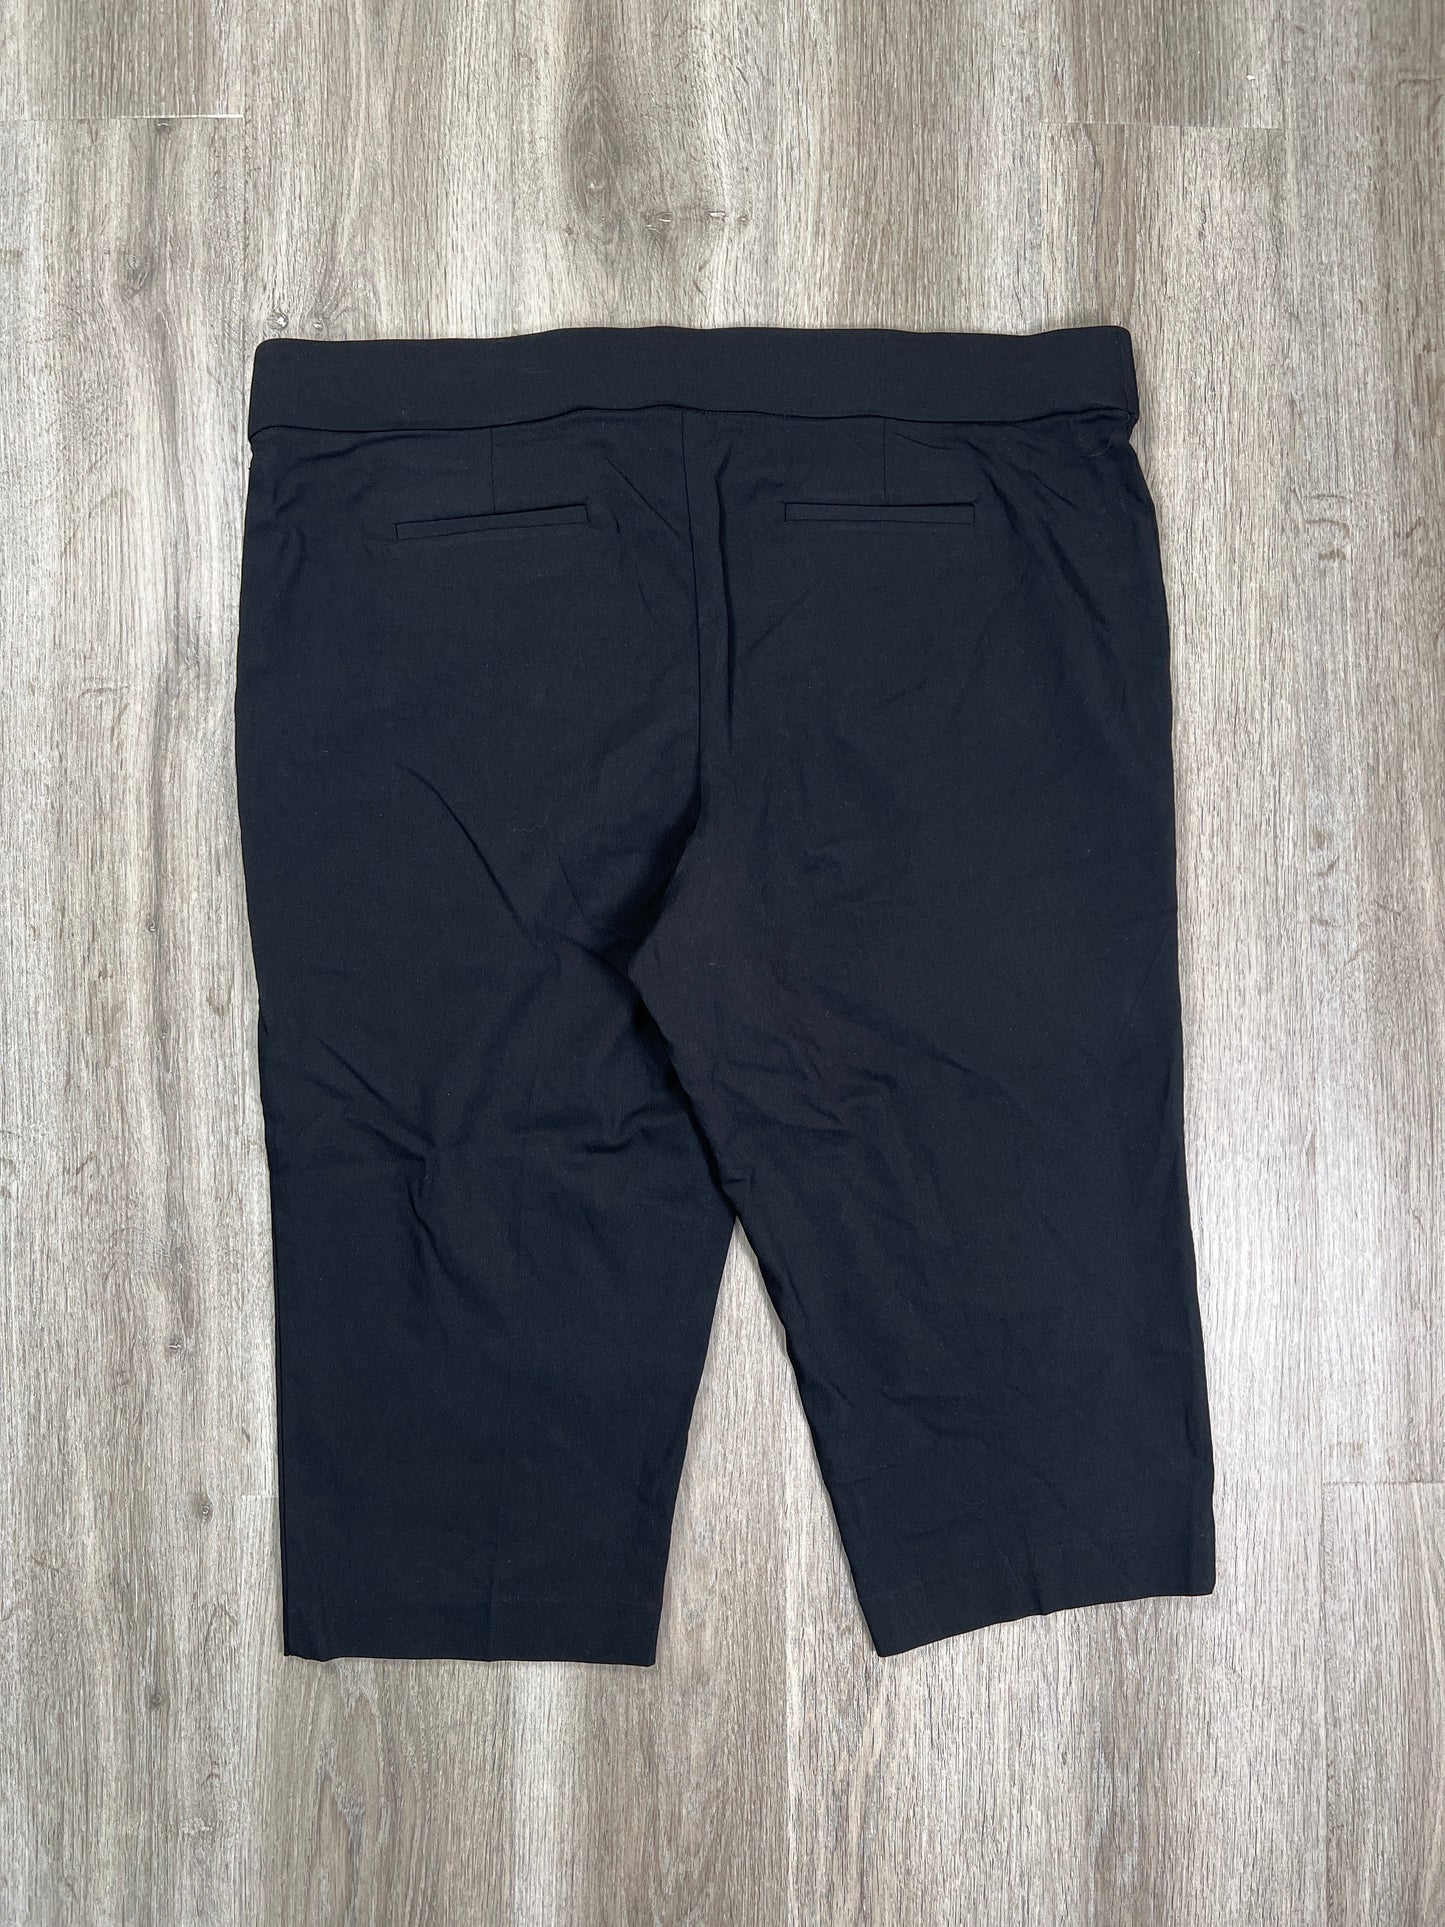 Pants Cropped By Evri  Size: 3x